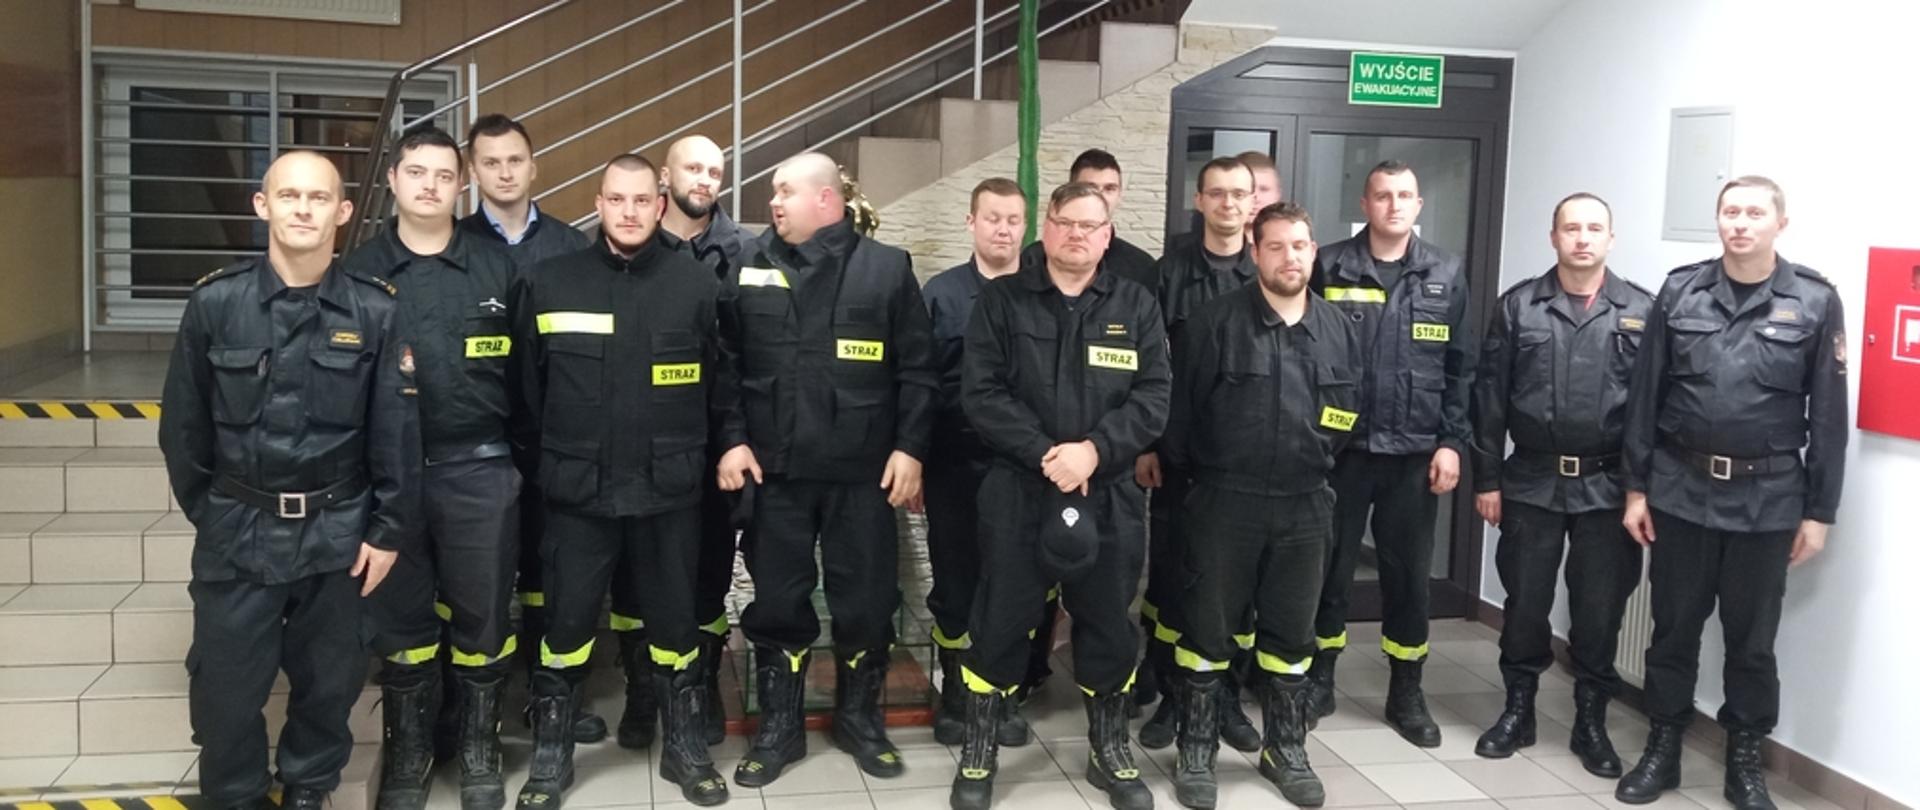 zdjęciu strażacy z Ochotniczych Straży Pożarnych po egzaminie kończącym szkolenie naczelników OSP. Strażacy ubrani w ubrania koszarowe koloru czarnego bez czapek na holu Komendy Powiatowej Państwowej Straży Pożarnej w Gorlicach.